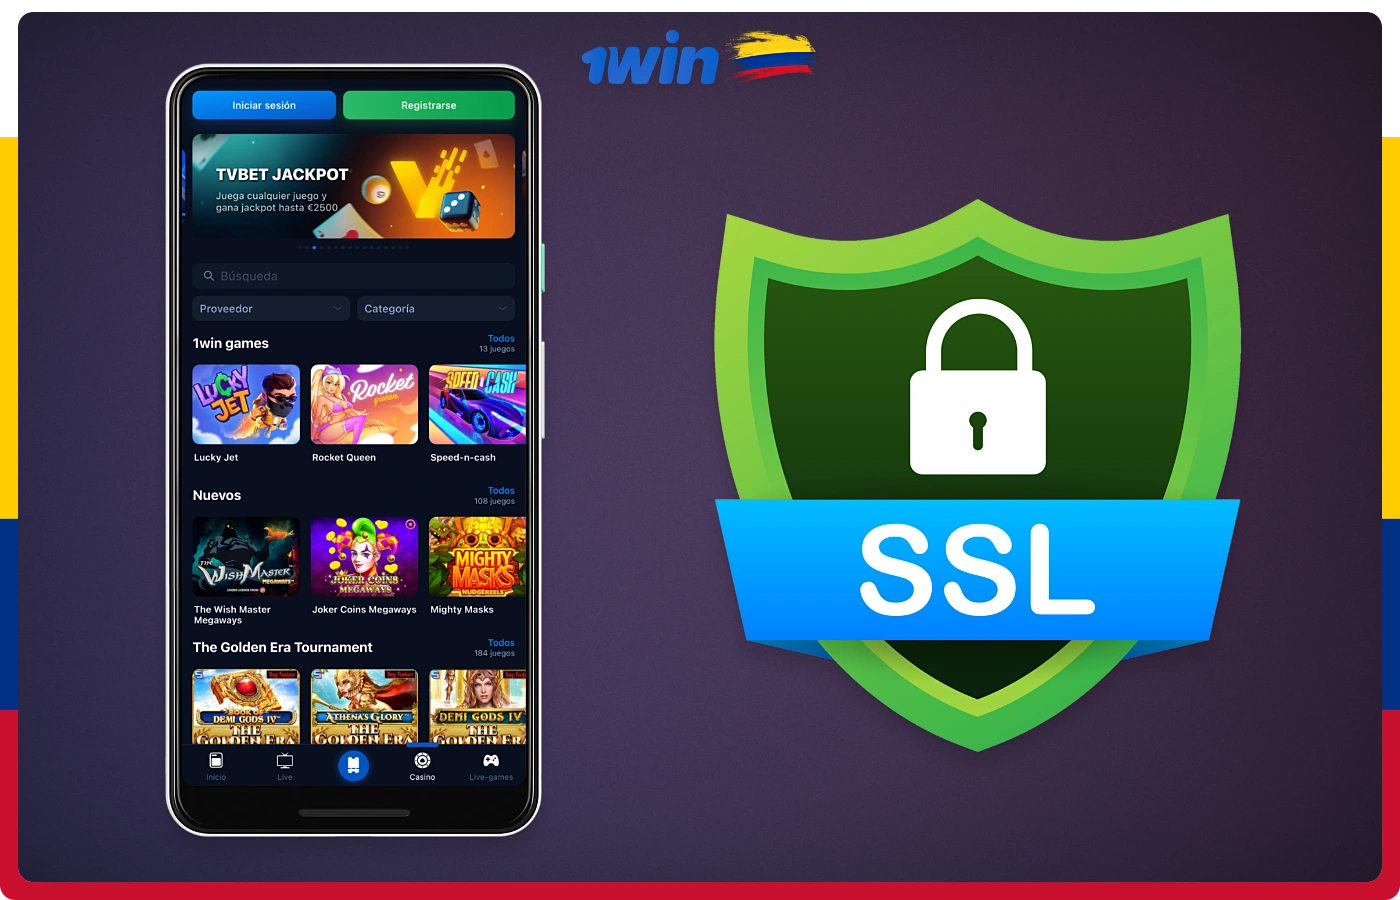 La aplicación 1win cuenta con varios niveles de seguridad, como SSL